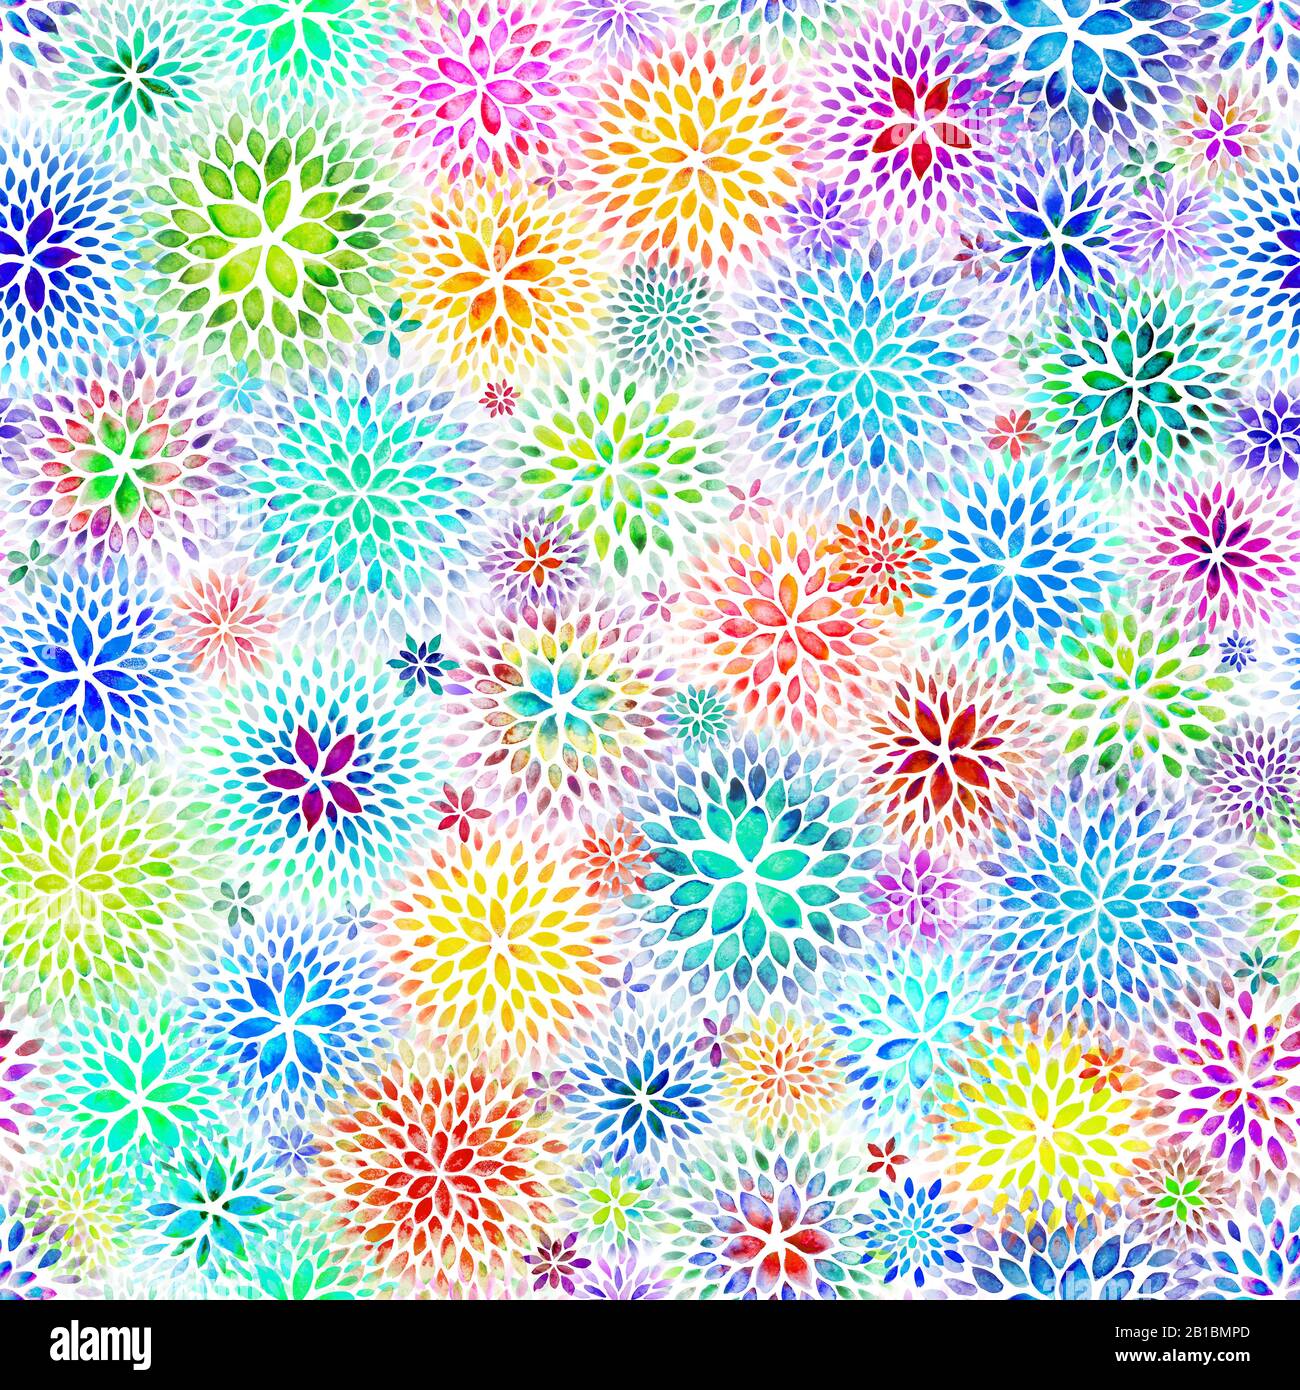 Nahtloses Muster von wasserfarbigen Chrysanthemumblumen mit wechselnden Farben, fotografiert in teilweise nasser Phase, wo die Papiertextur glänzende Höhen hat Stockfoto